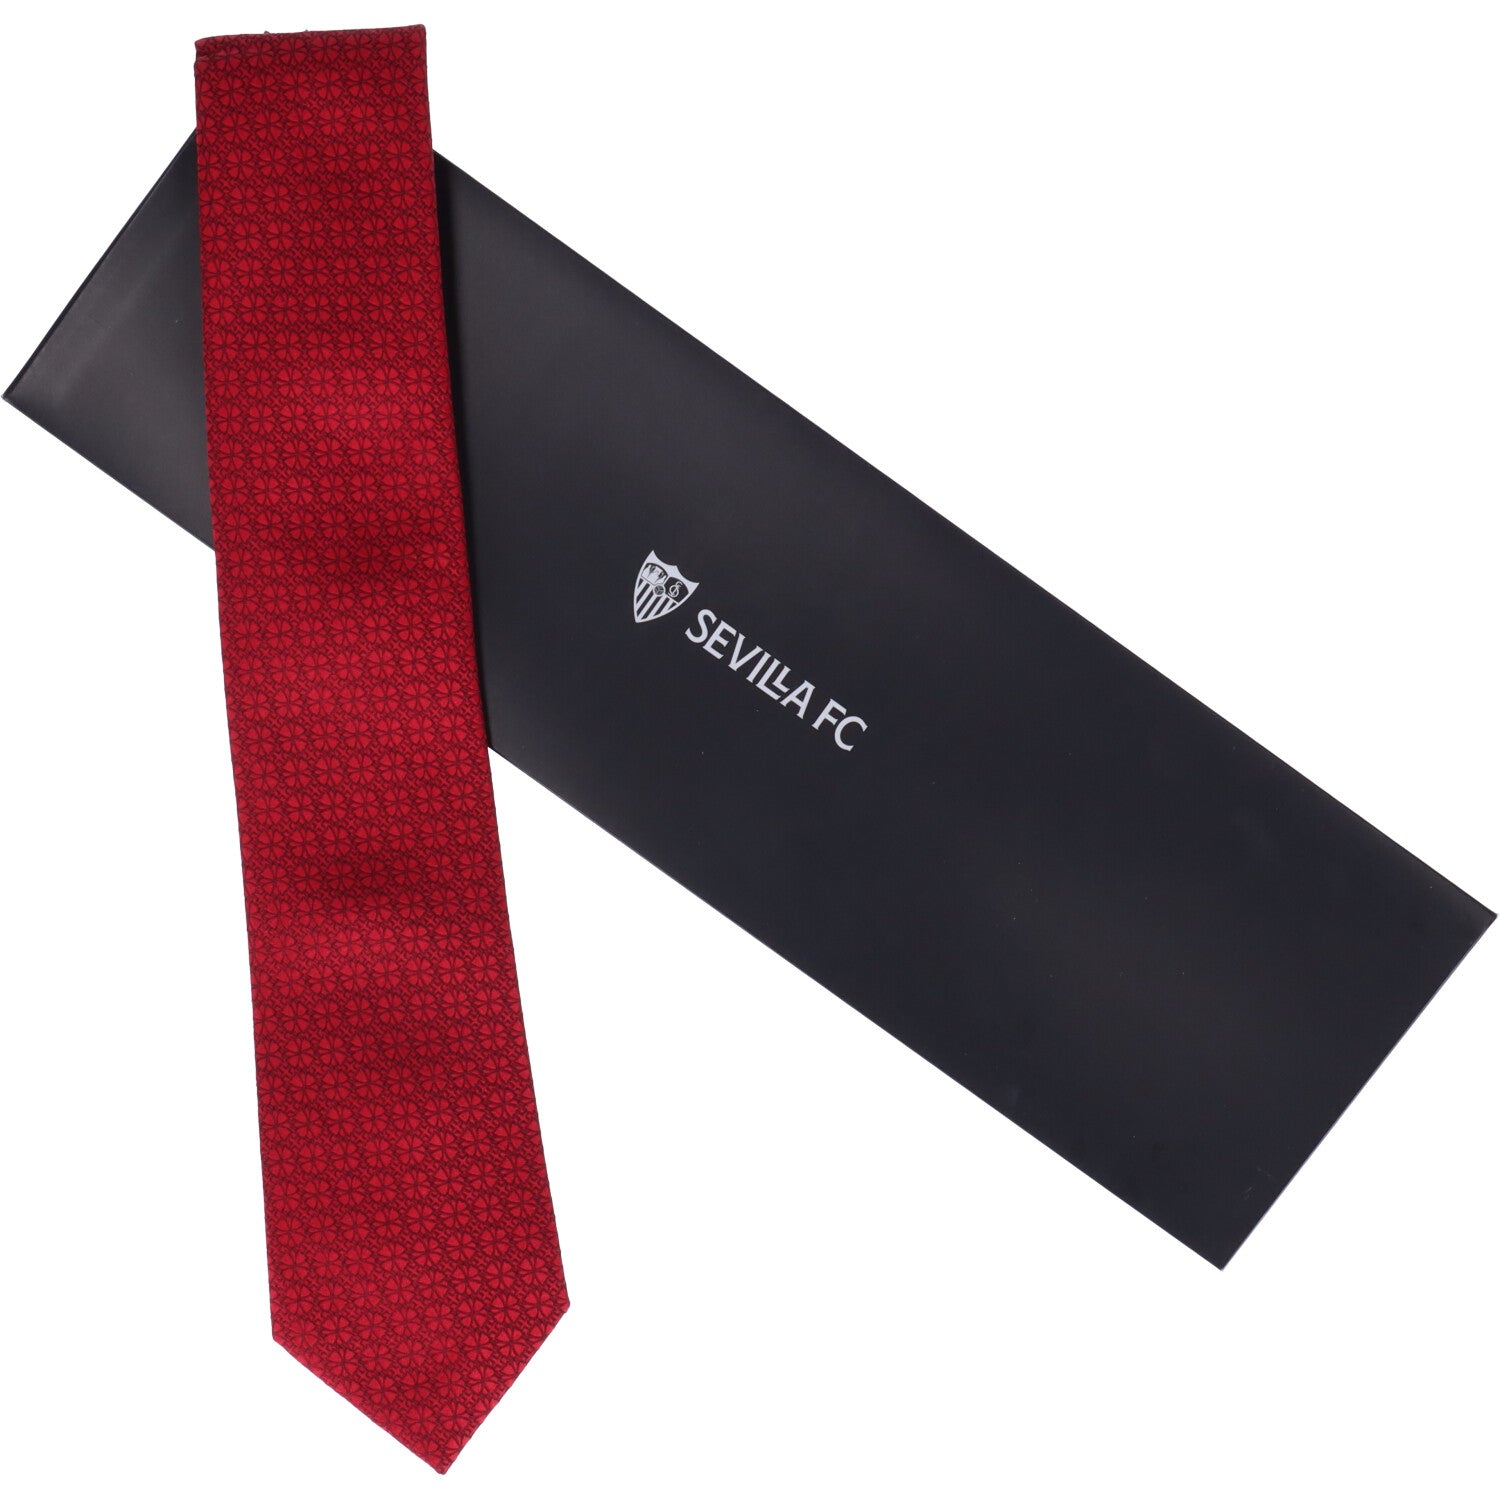 Corbata roja escudos negros forma trébol